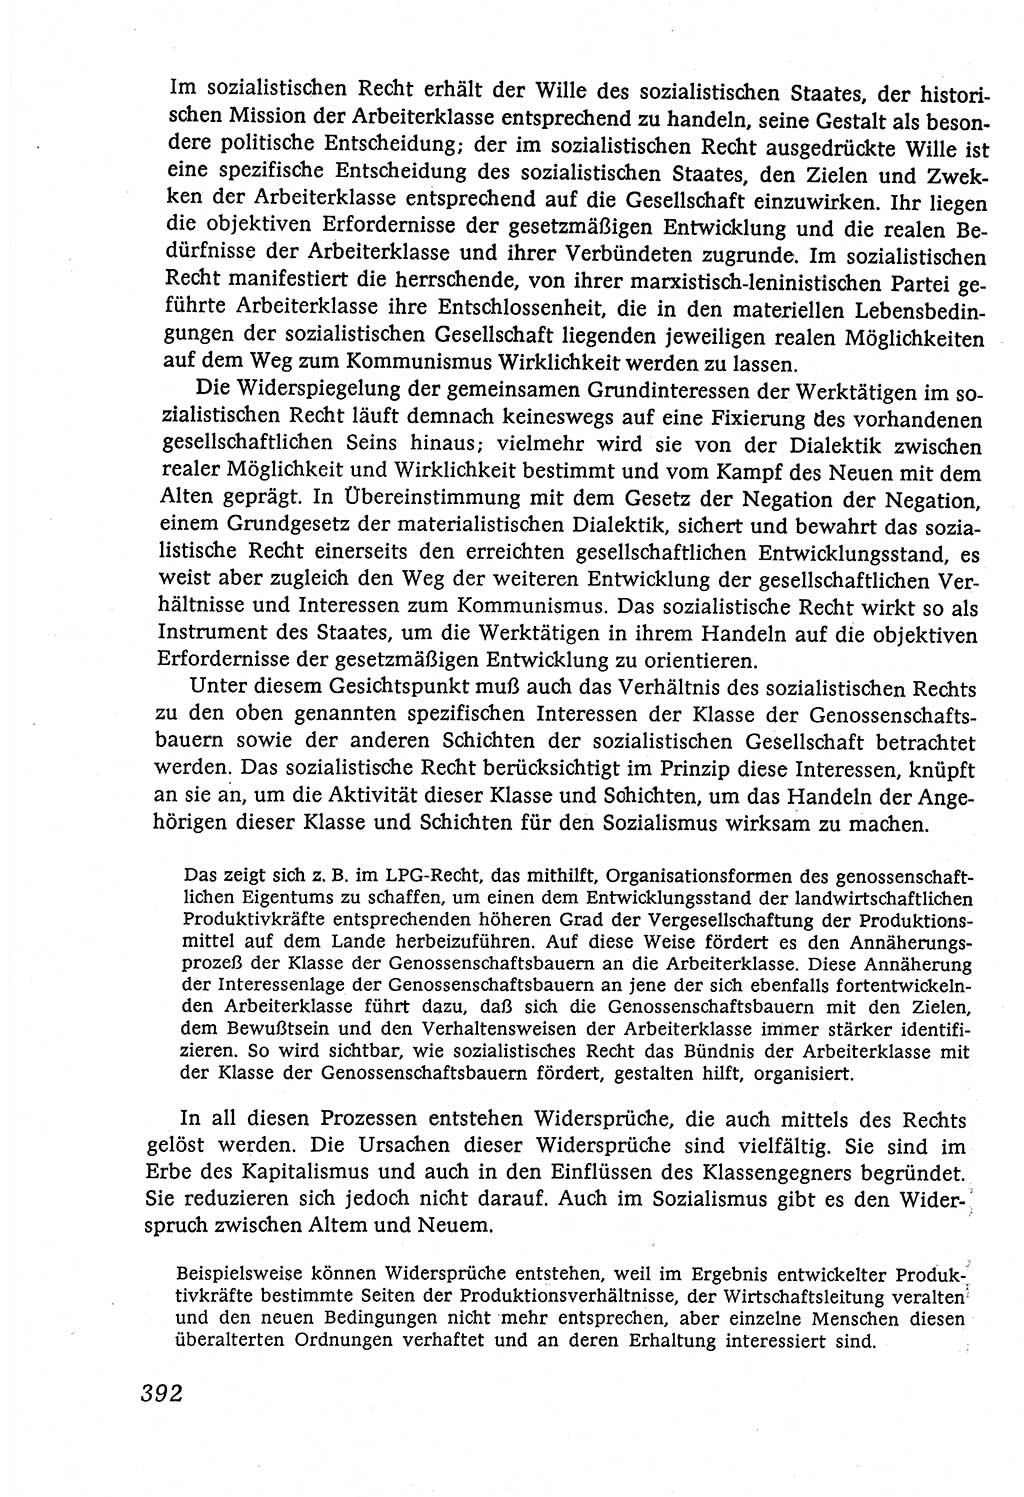 Marxistisch-leninistische (ML) Staats- und Rechtstheorie [Deutsche Demokratische Republik (DDR)], Lehrbuch 1980, Seite 392 (ML St.-R.-Th. DDR Lb. 1980, S. 392)